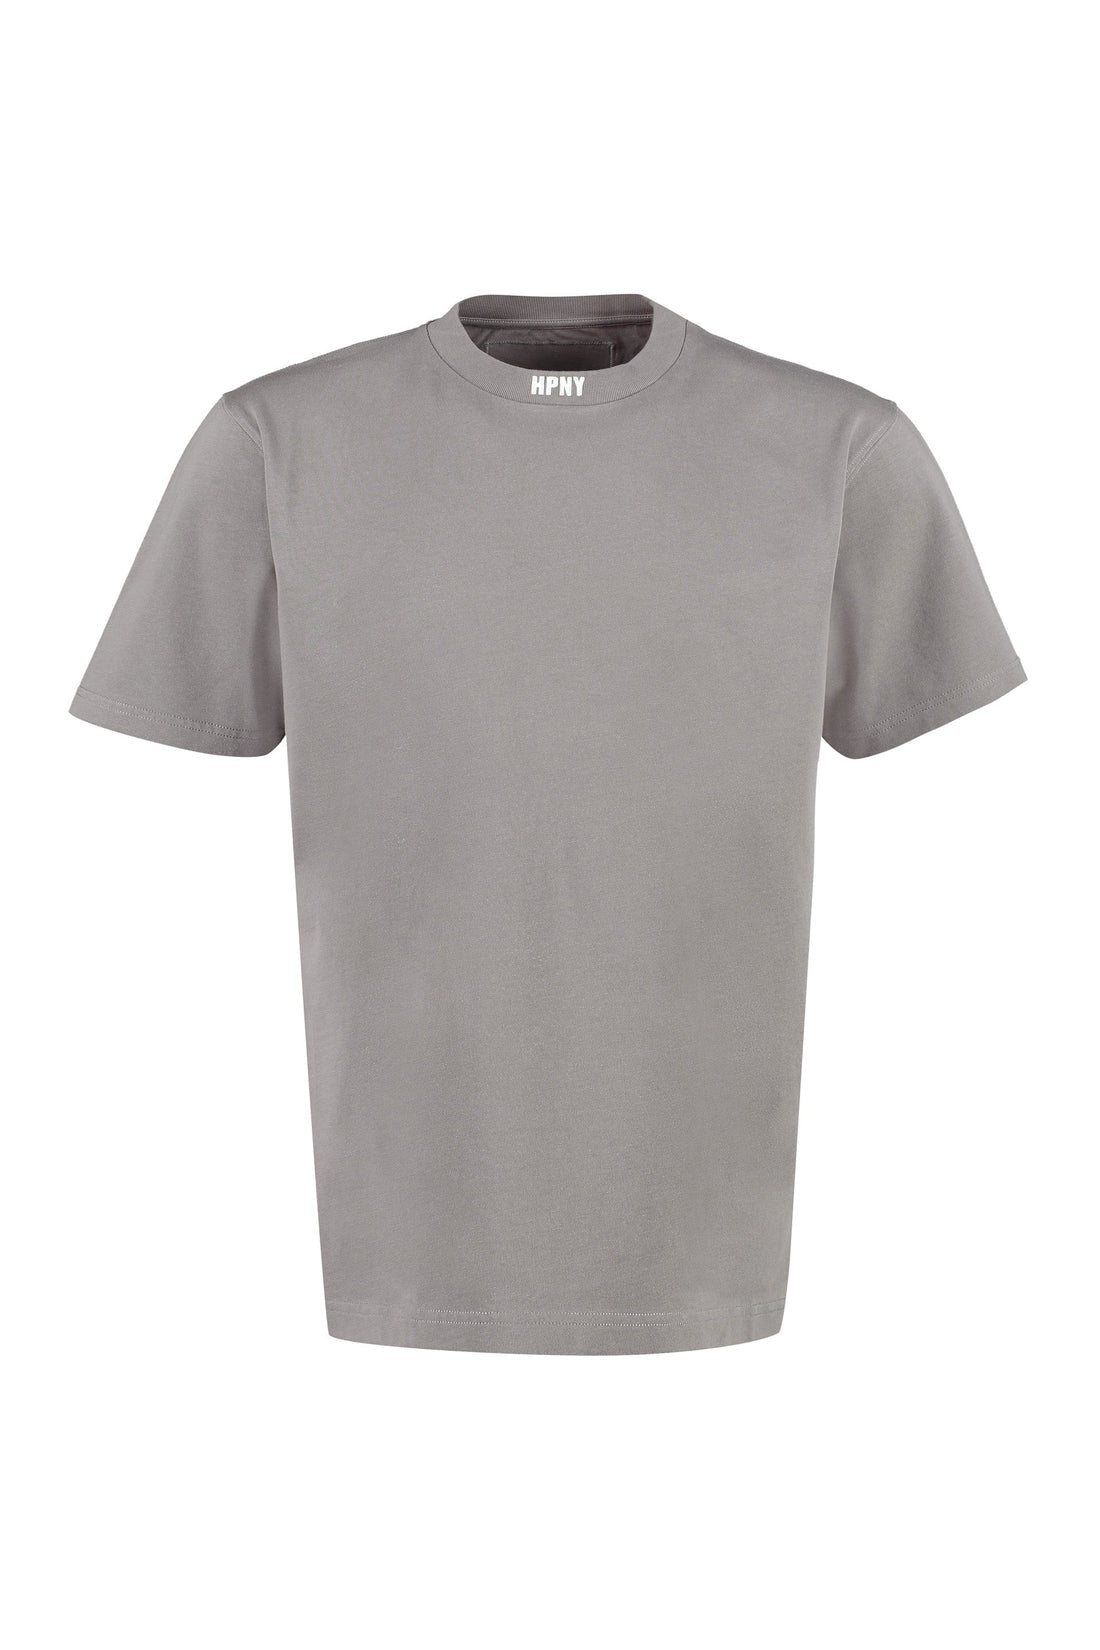 Heron Preston-OUTLET-SALE-Cotton crew-neck T-shirt-ARCHIVIST